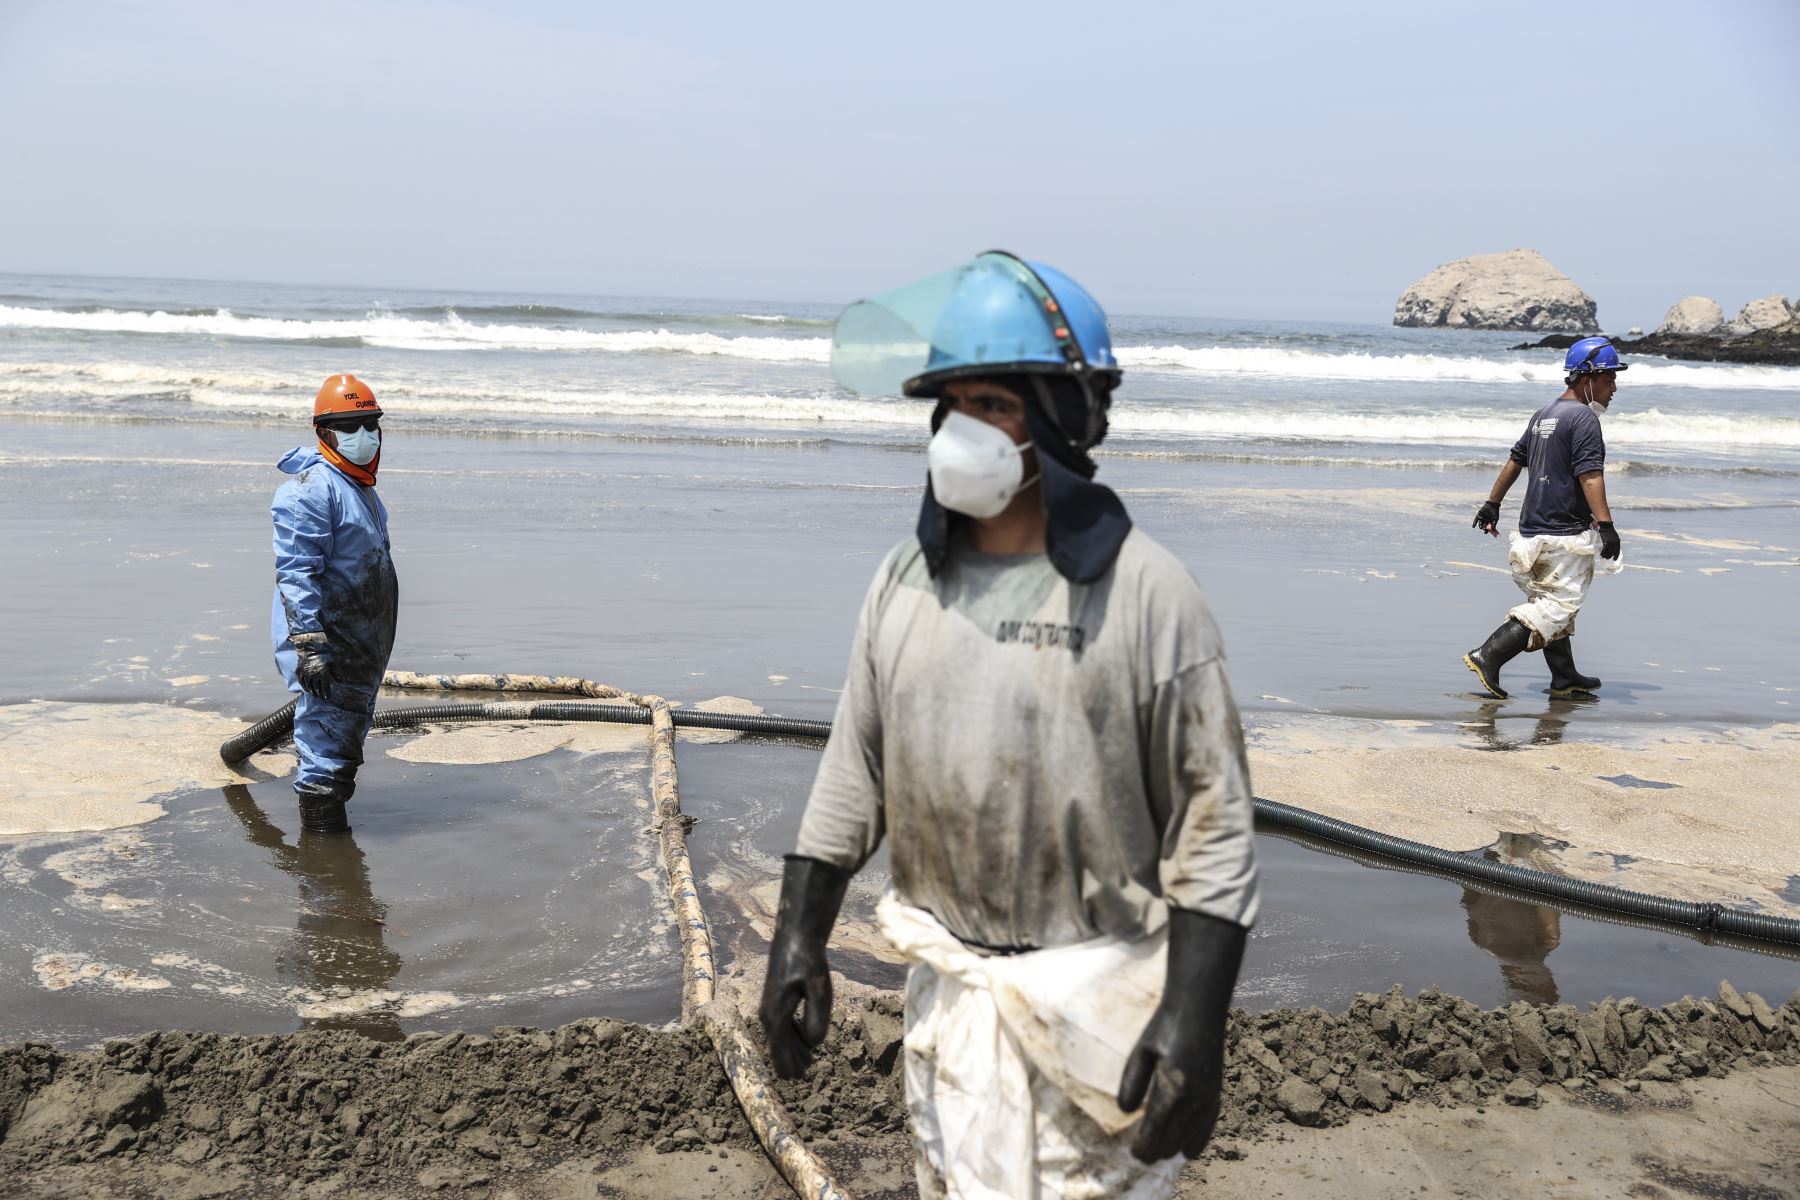 Limpieza de petróleo derramado en playas de Ventanilla. Foto: ANDINA/Jhonel Rodríguez Robles.